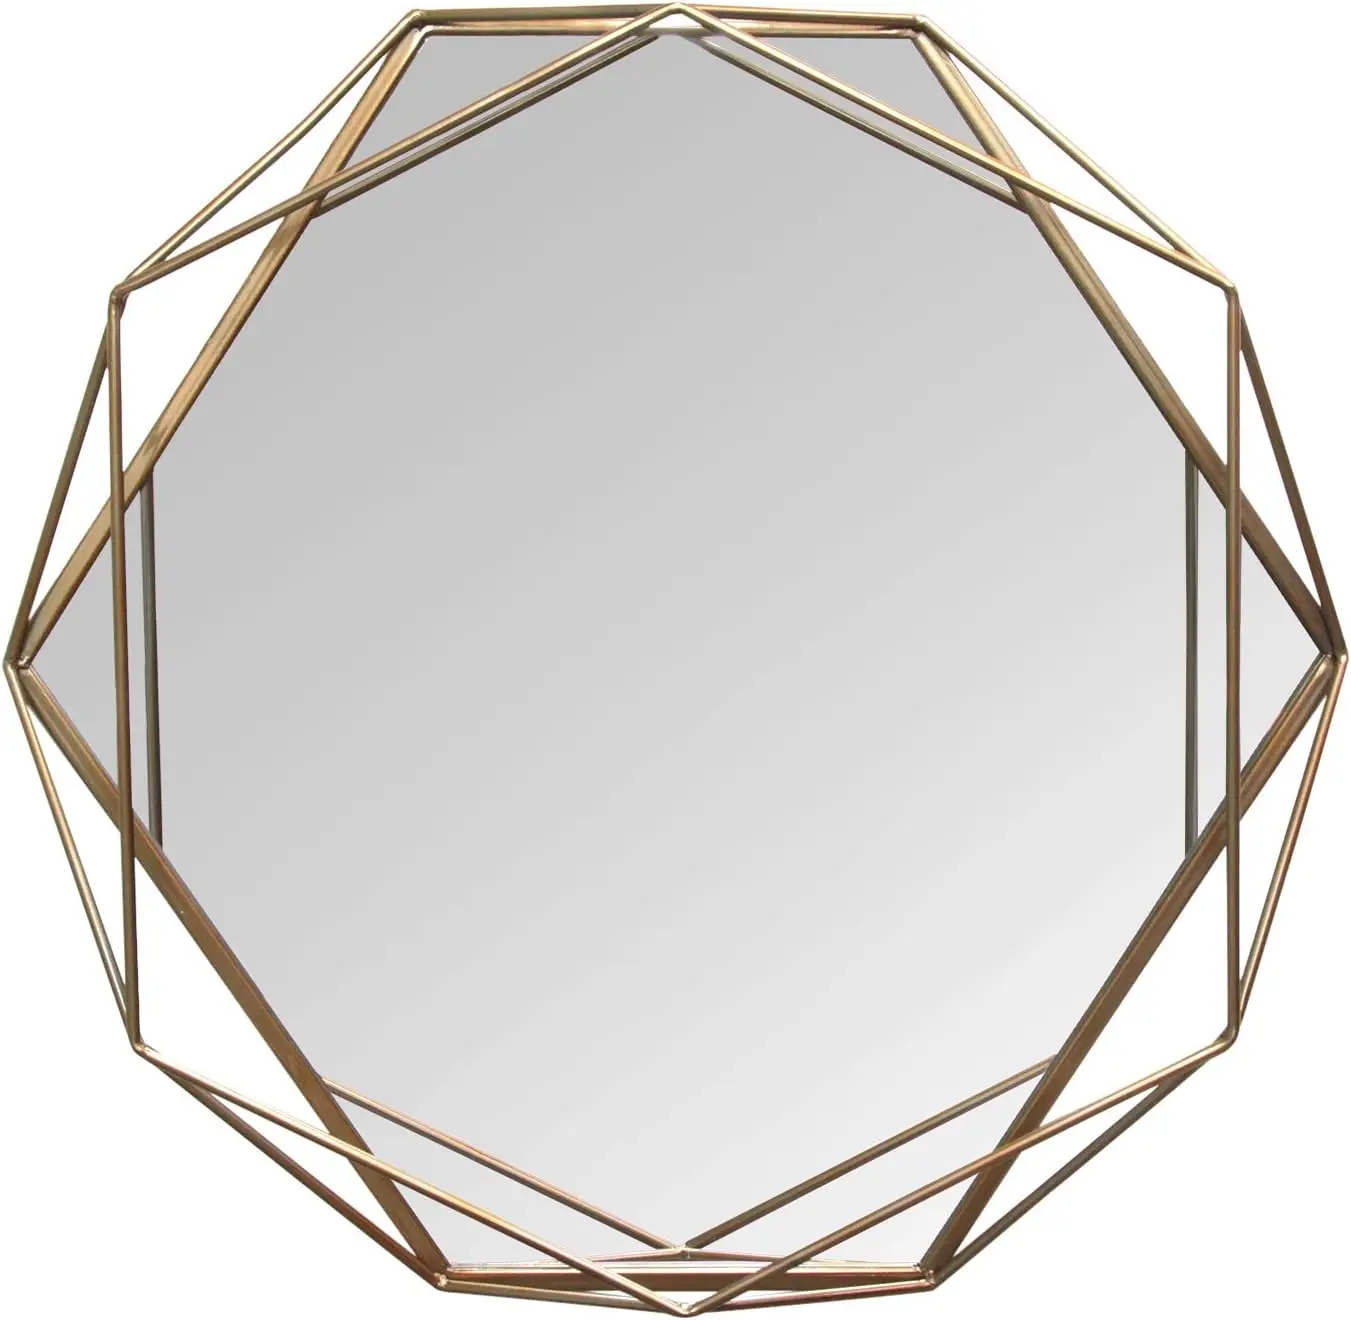 

Home Décor S11541 Mirror, 31.50 W X 3.15 D X 29.53 H, Gold Non reversible mirror Non reversing mirror Shower mirror fogless f